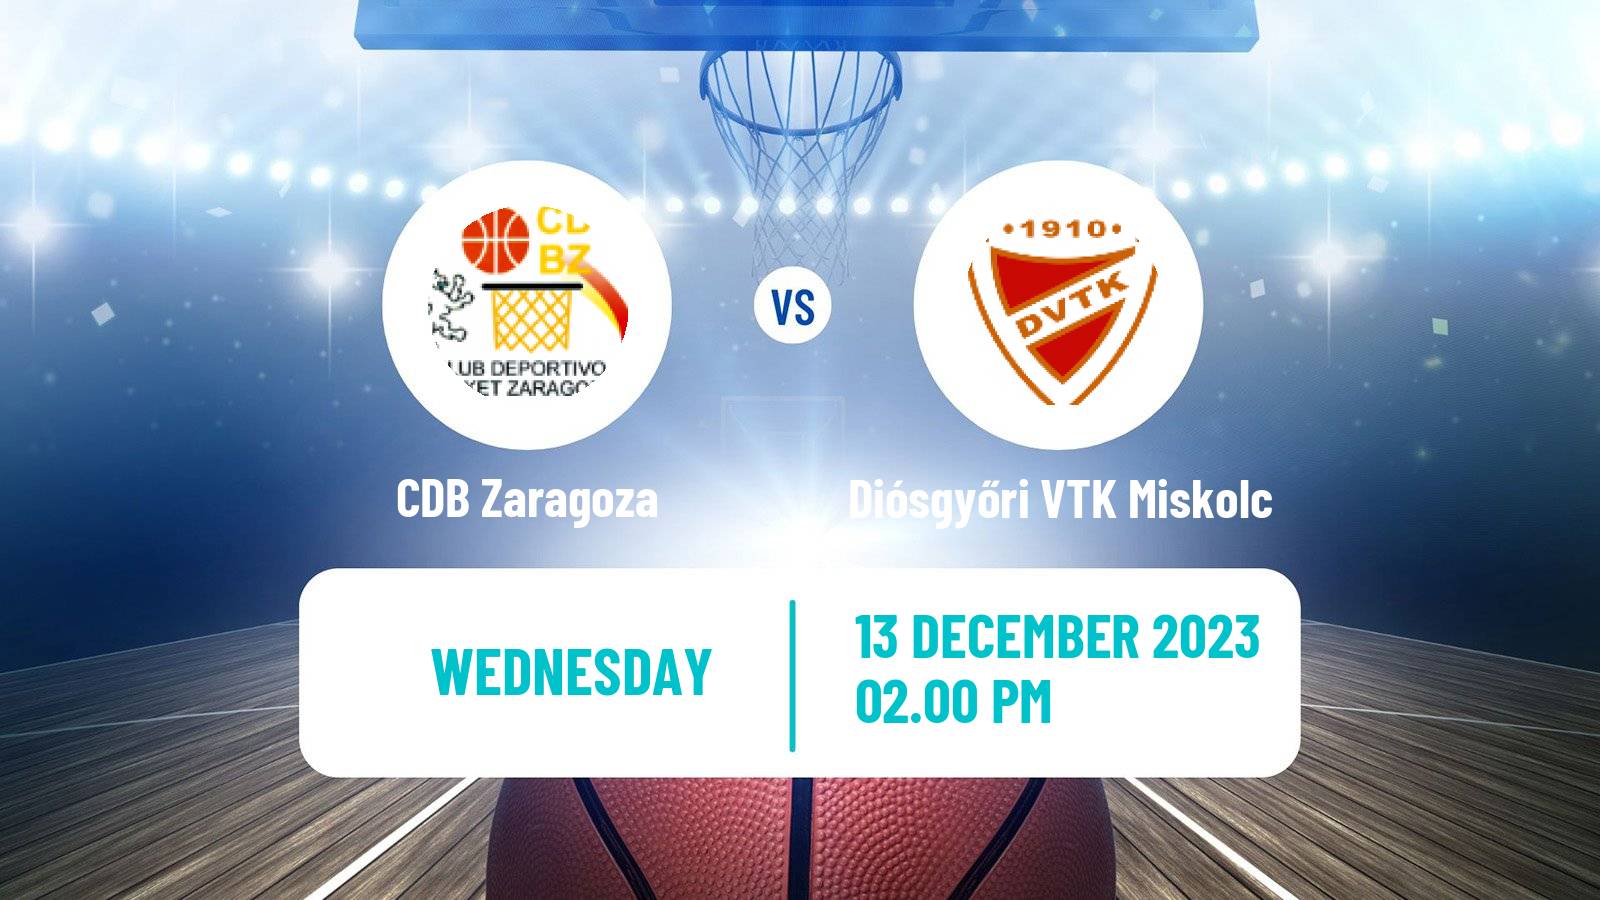 Basketball Euroleague Women Zaragoza - Diósgyőri VTK Miskolc